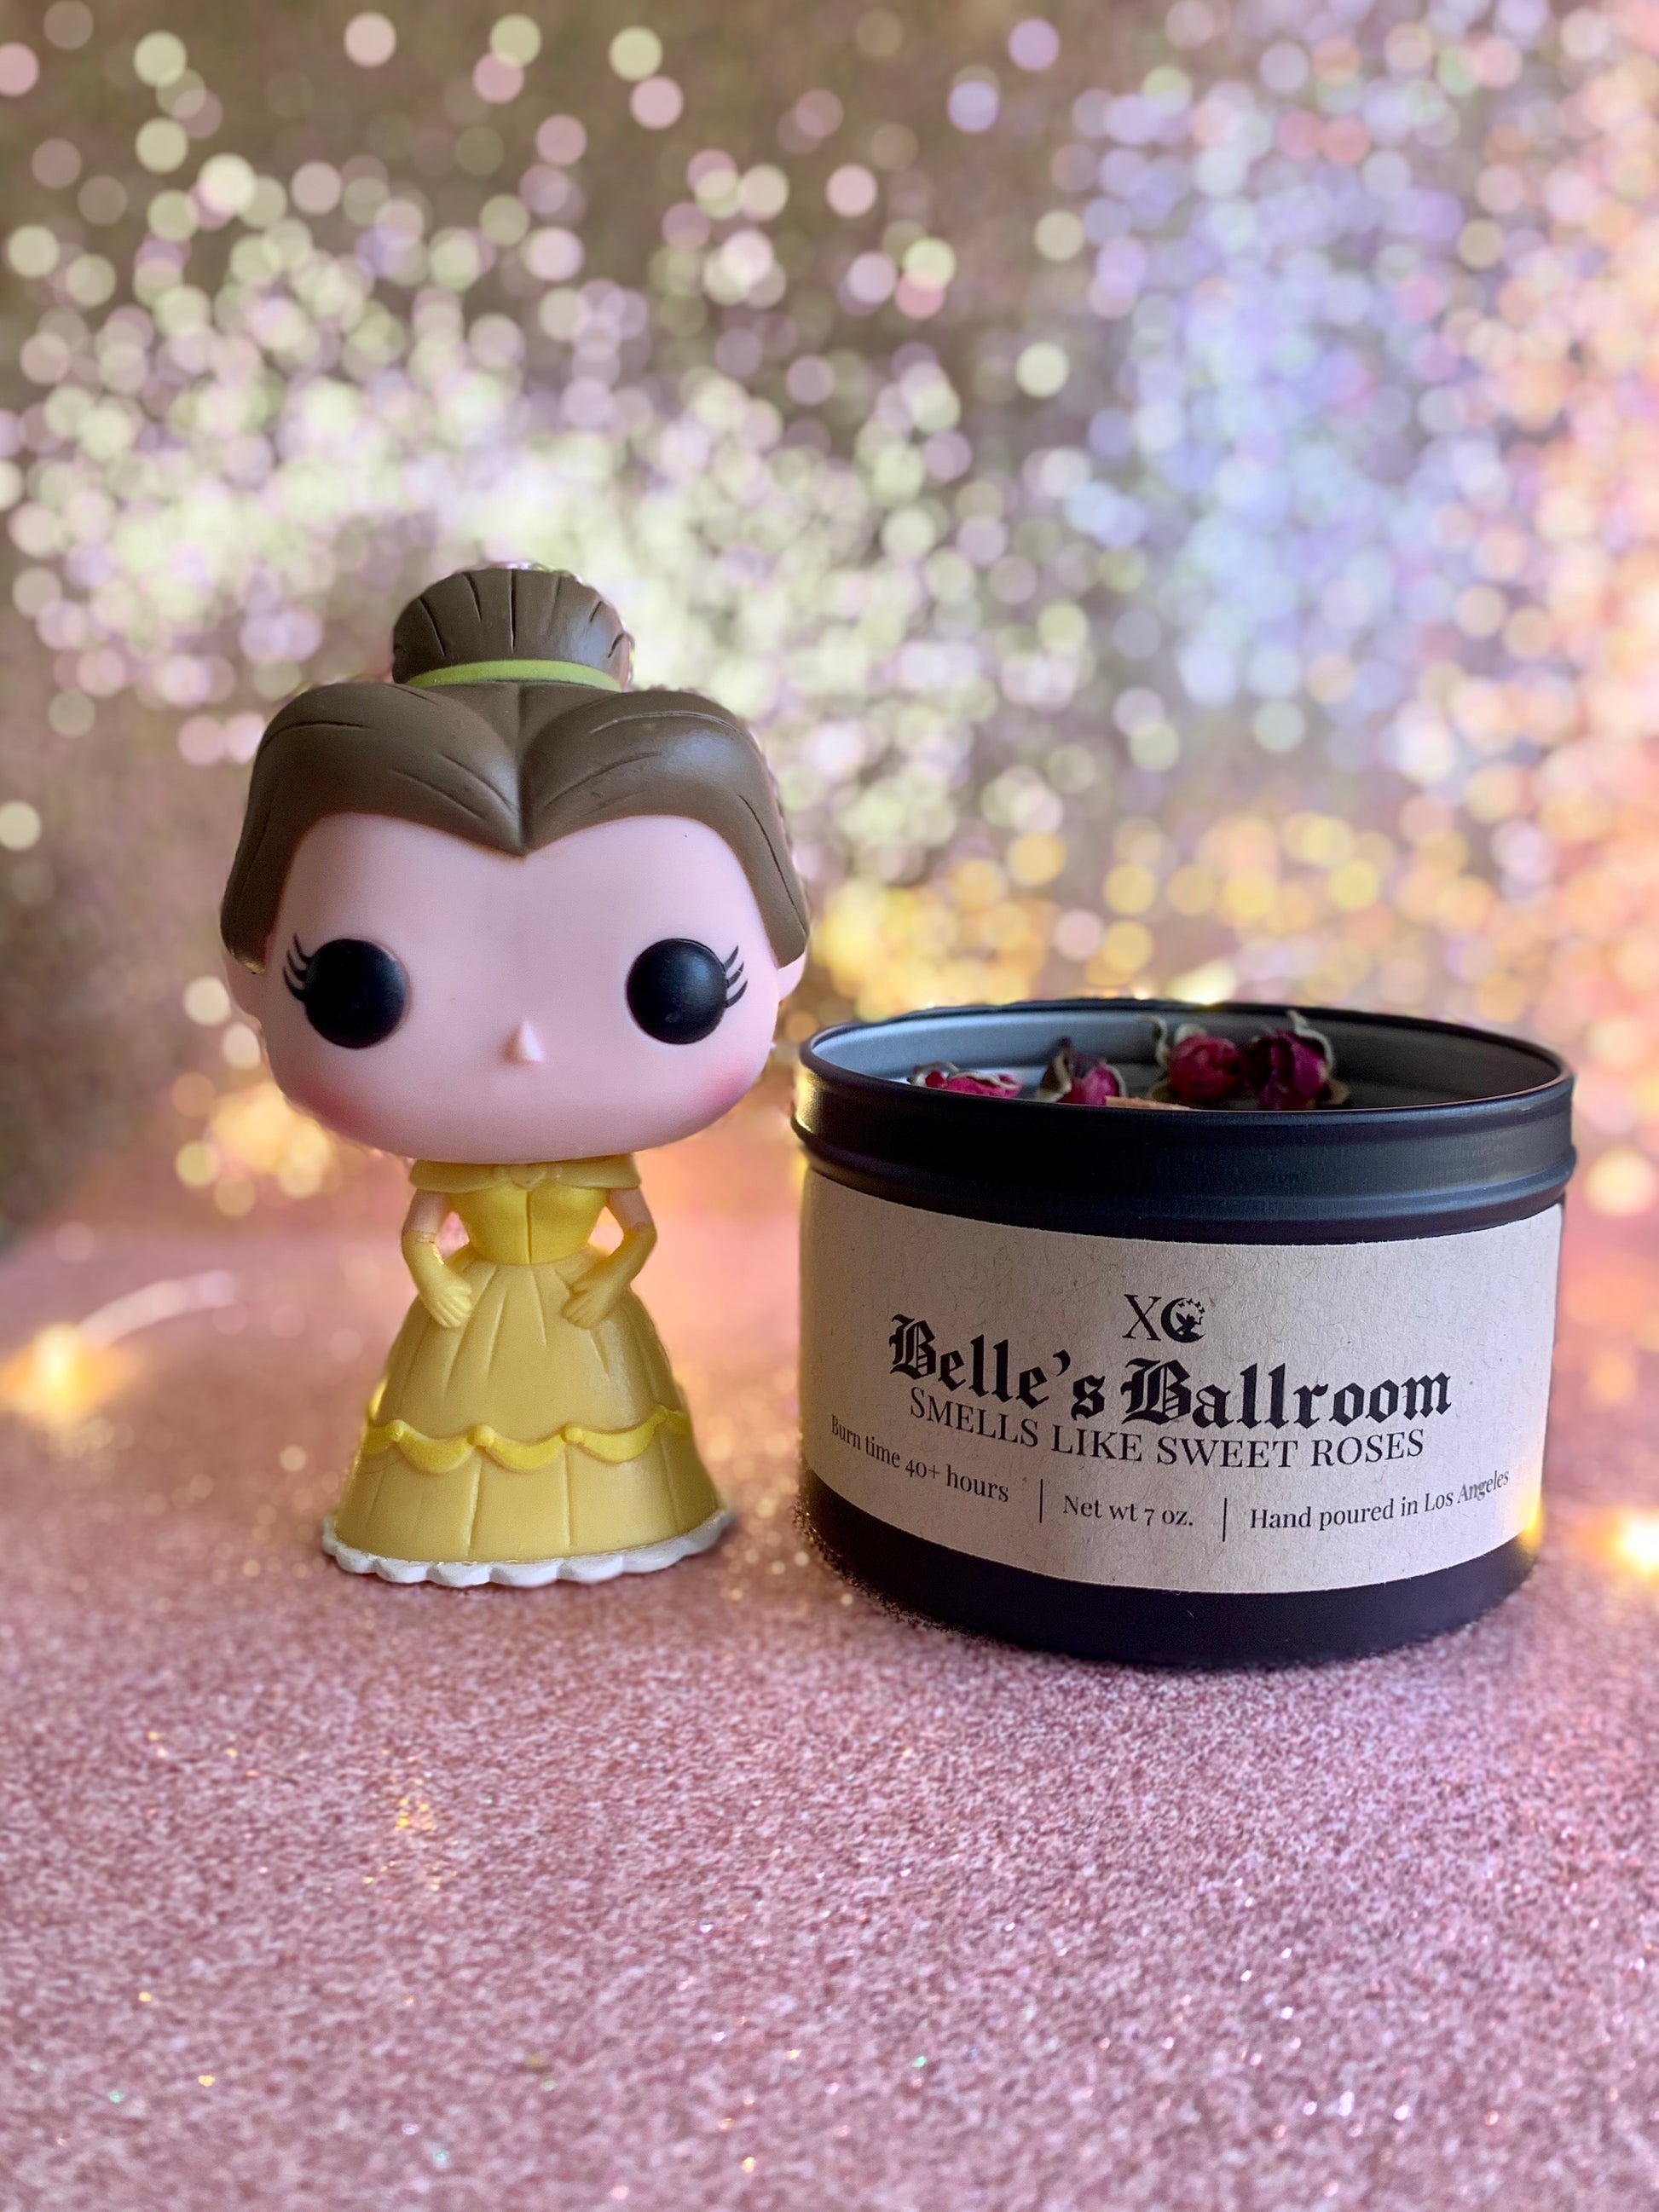 Belle's Ballroom Candle - XO Illuminated 